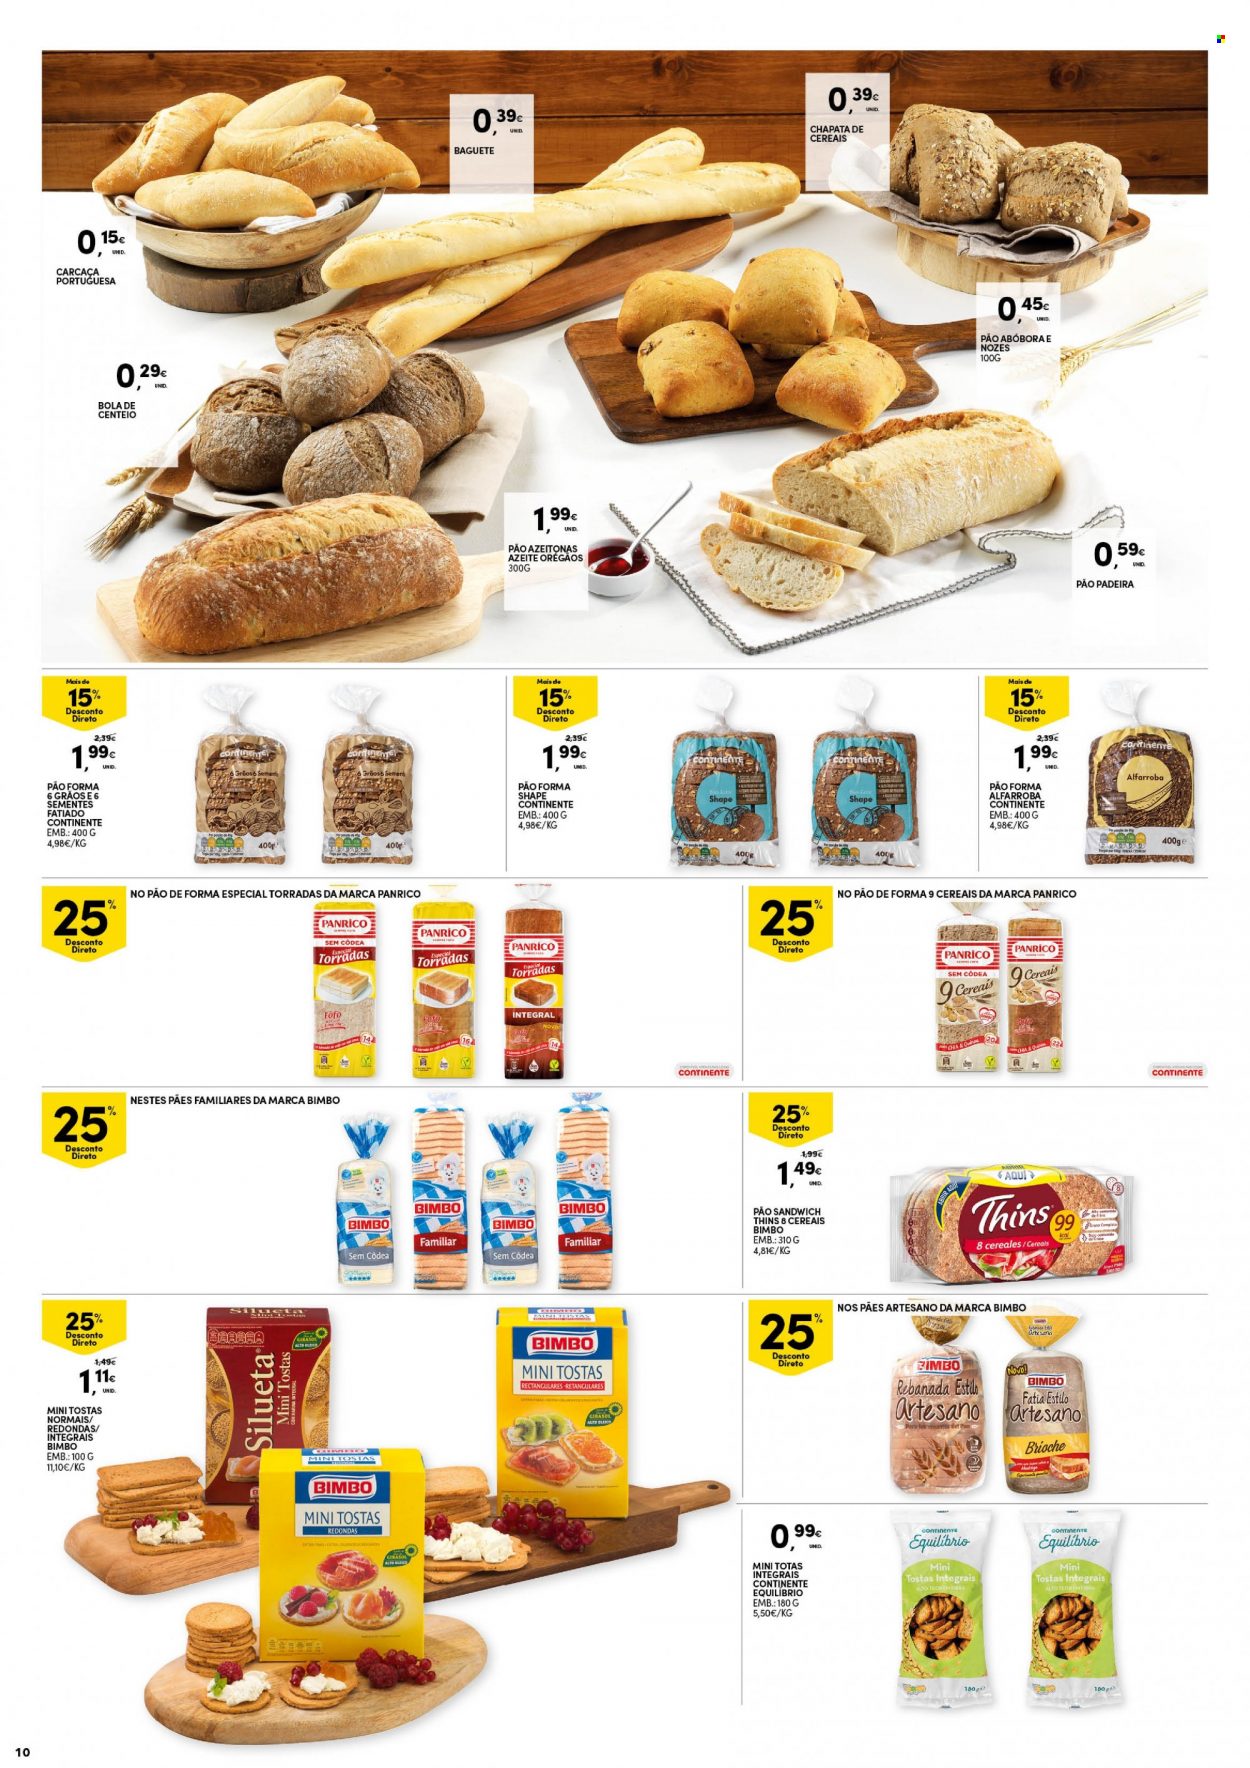 thumbnail - Folheto Continente - 2.11.2021 - 8.11.2021 - Produtos em promoção - sanduiche, pão, baguete, pão de forma, minitostas, azeite de oliva, nozes. Página 10.